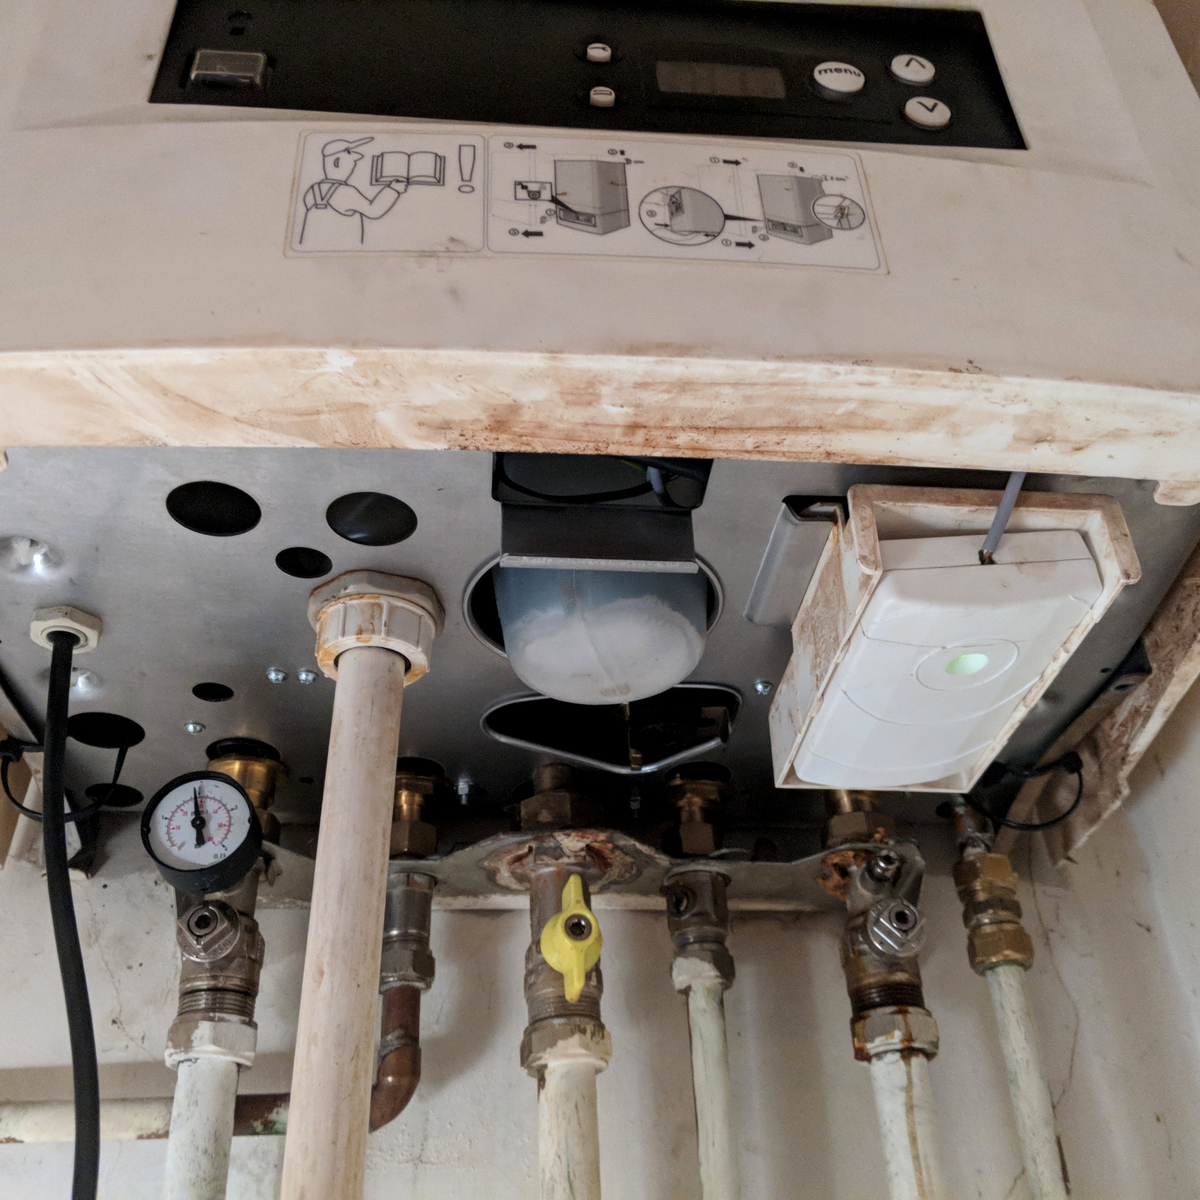 why is my boiler leaking water